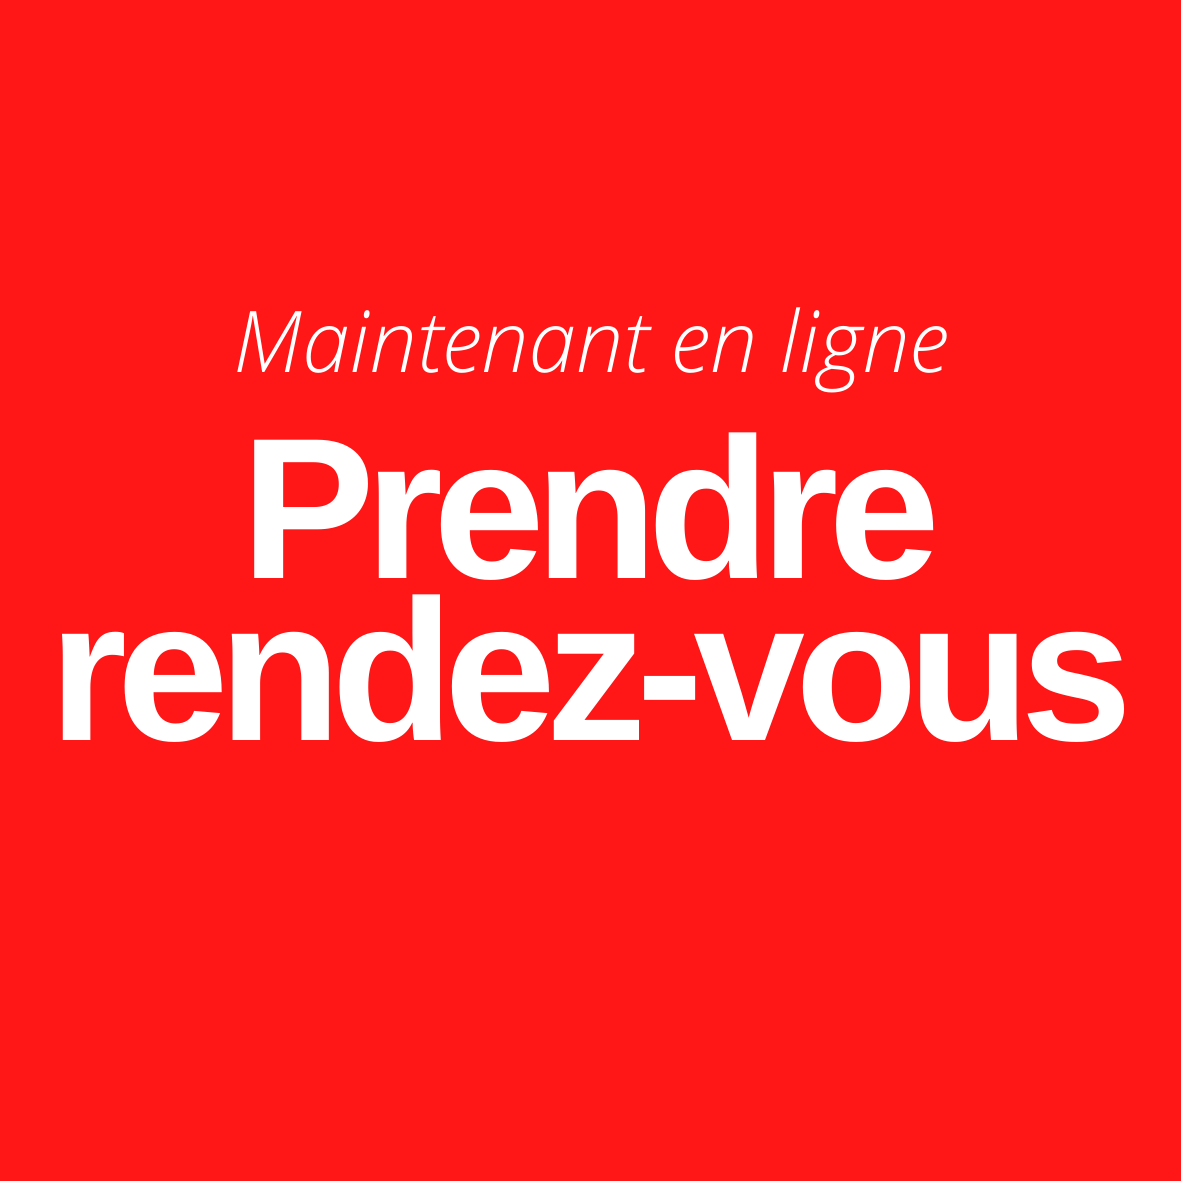 20210215_logo_online_termin_fr.png